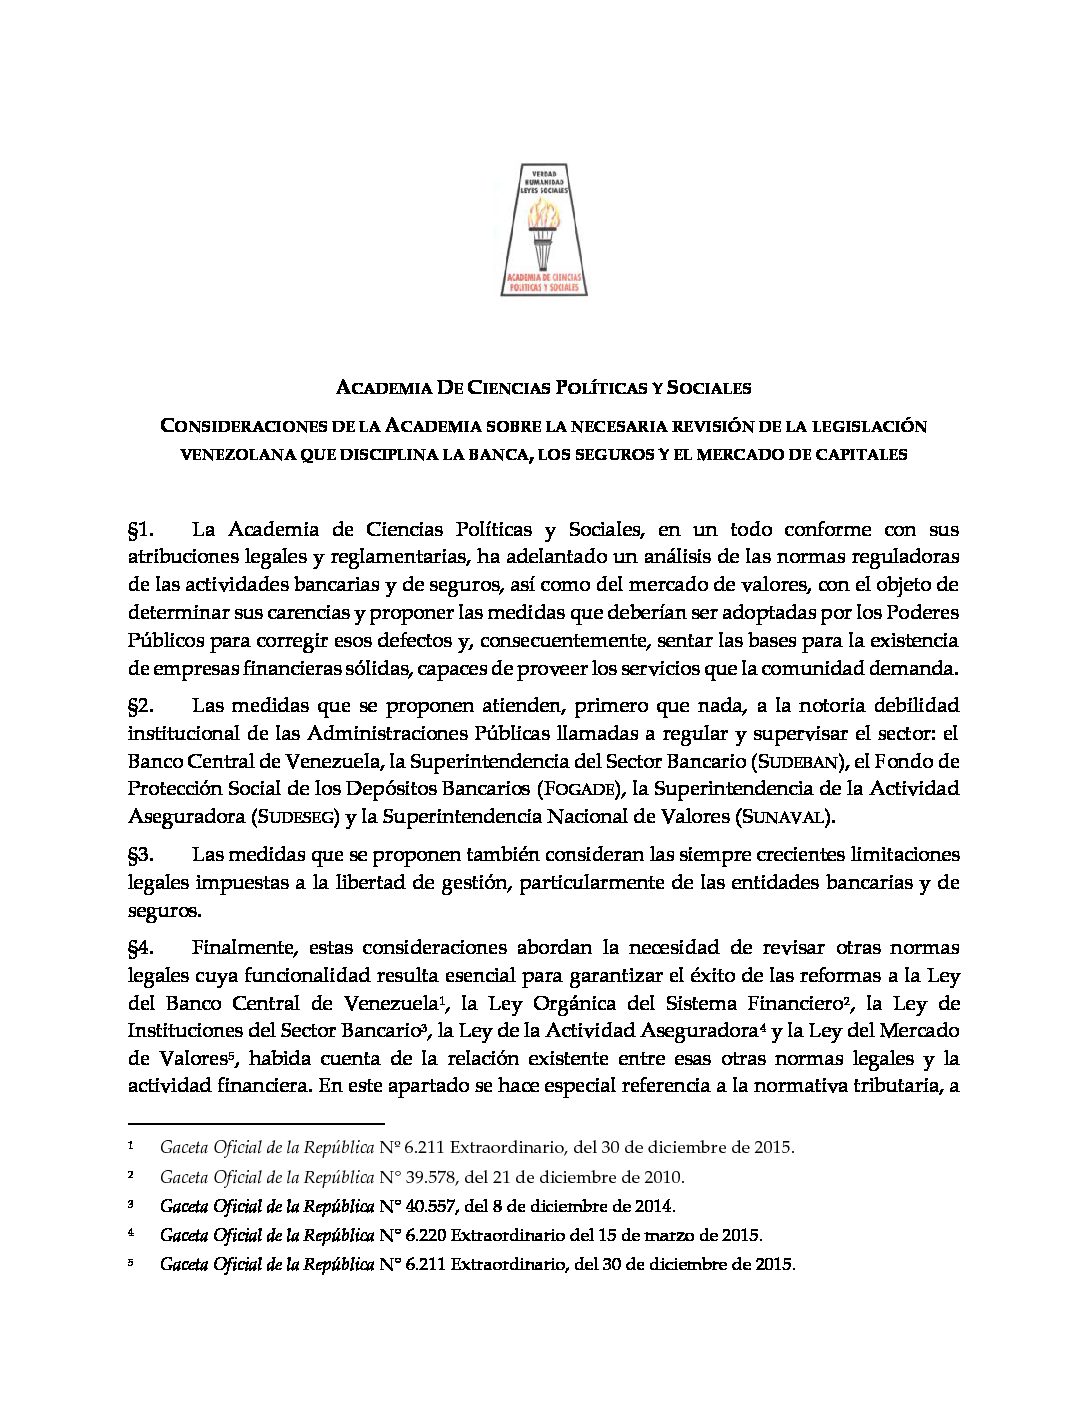 Informe de la Comisión Académica para el estudio del sistema financiero venezolano